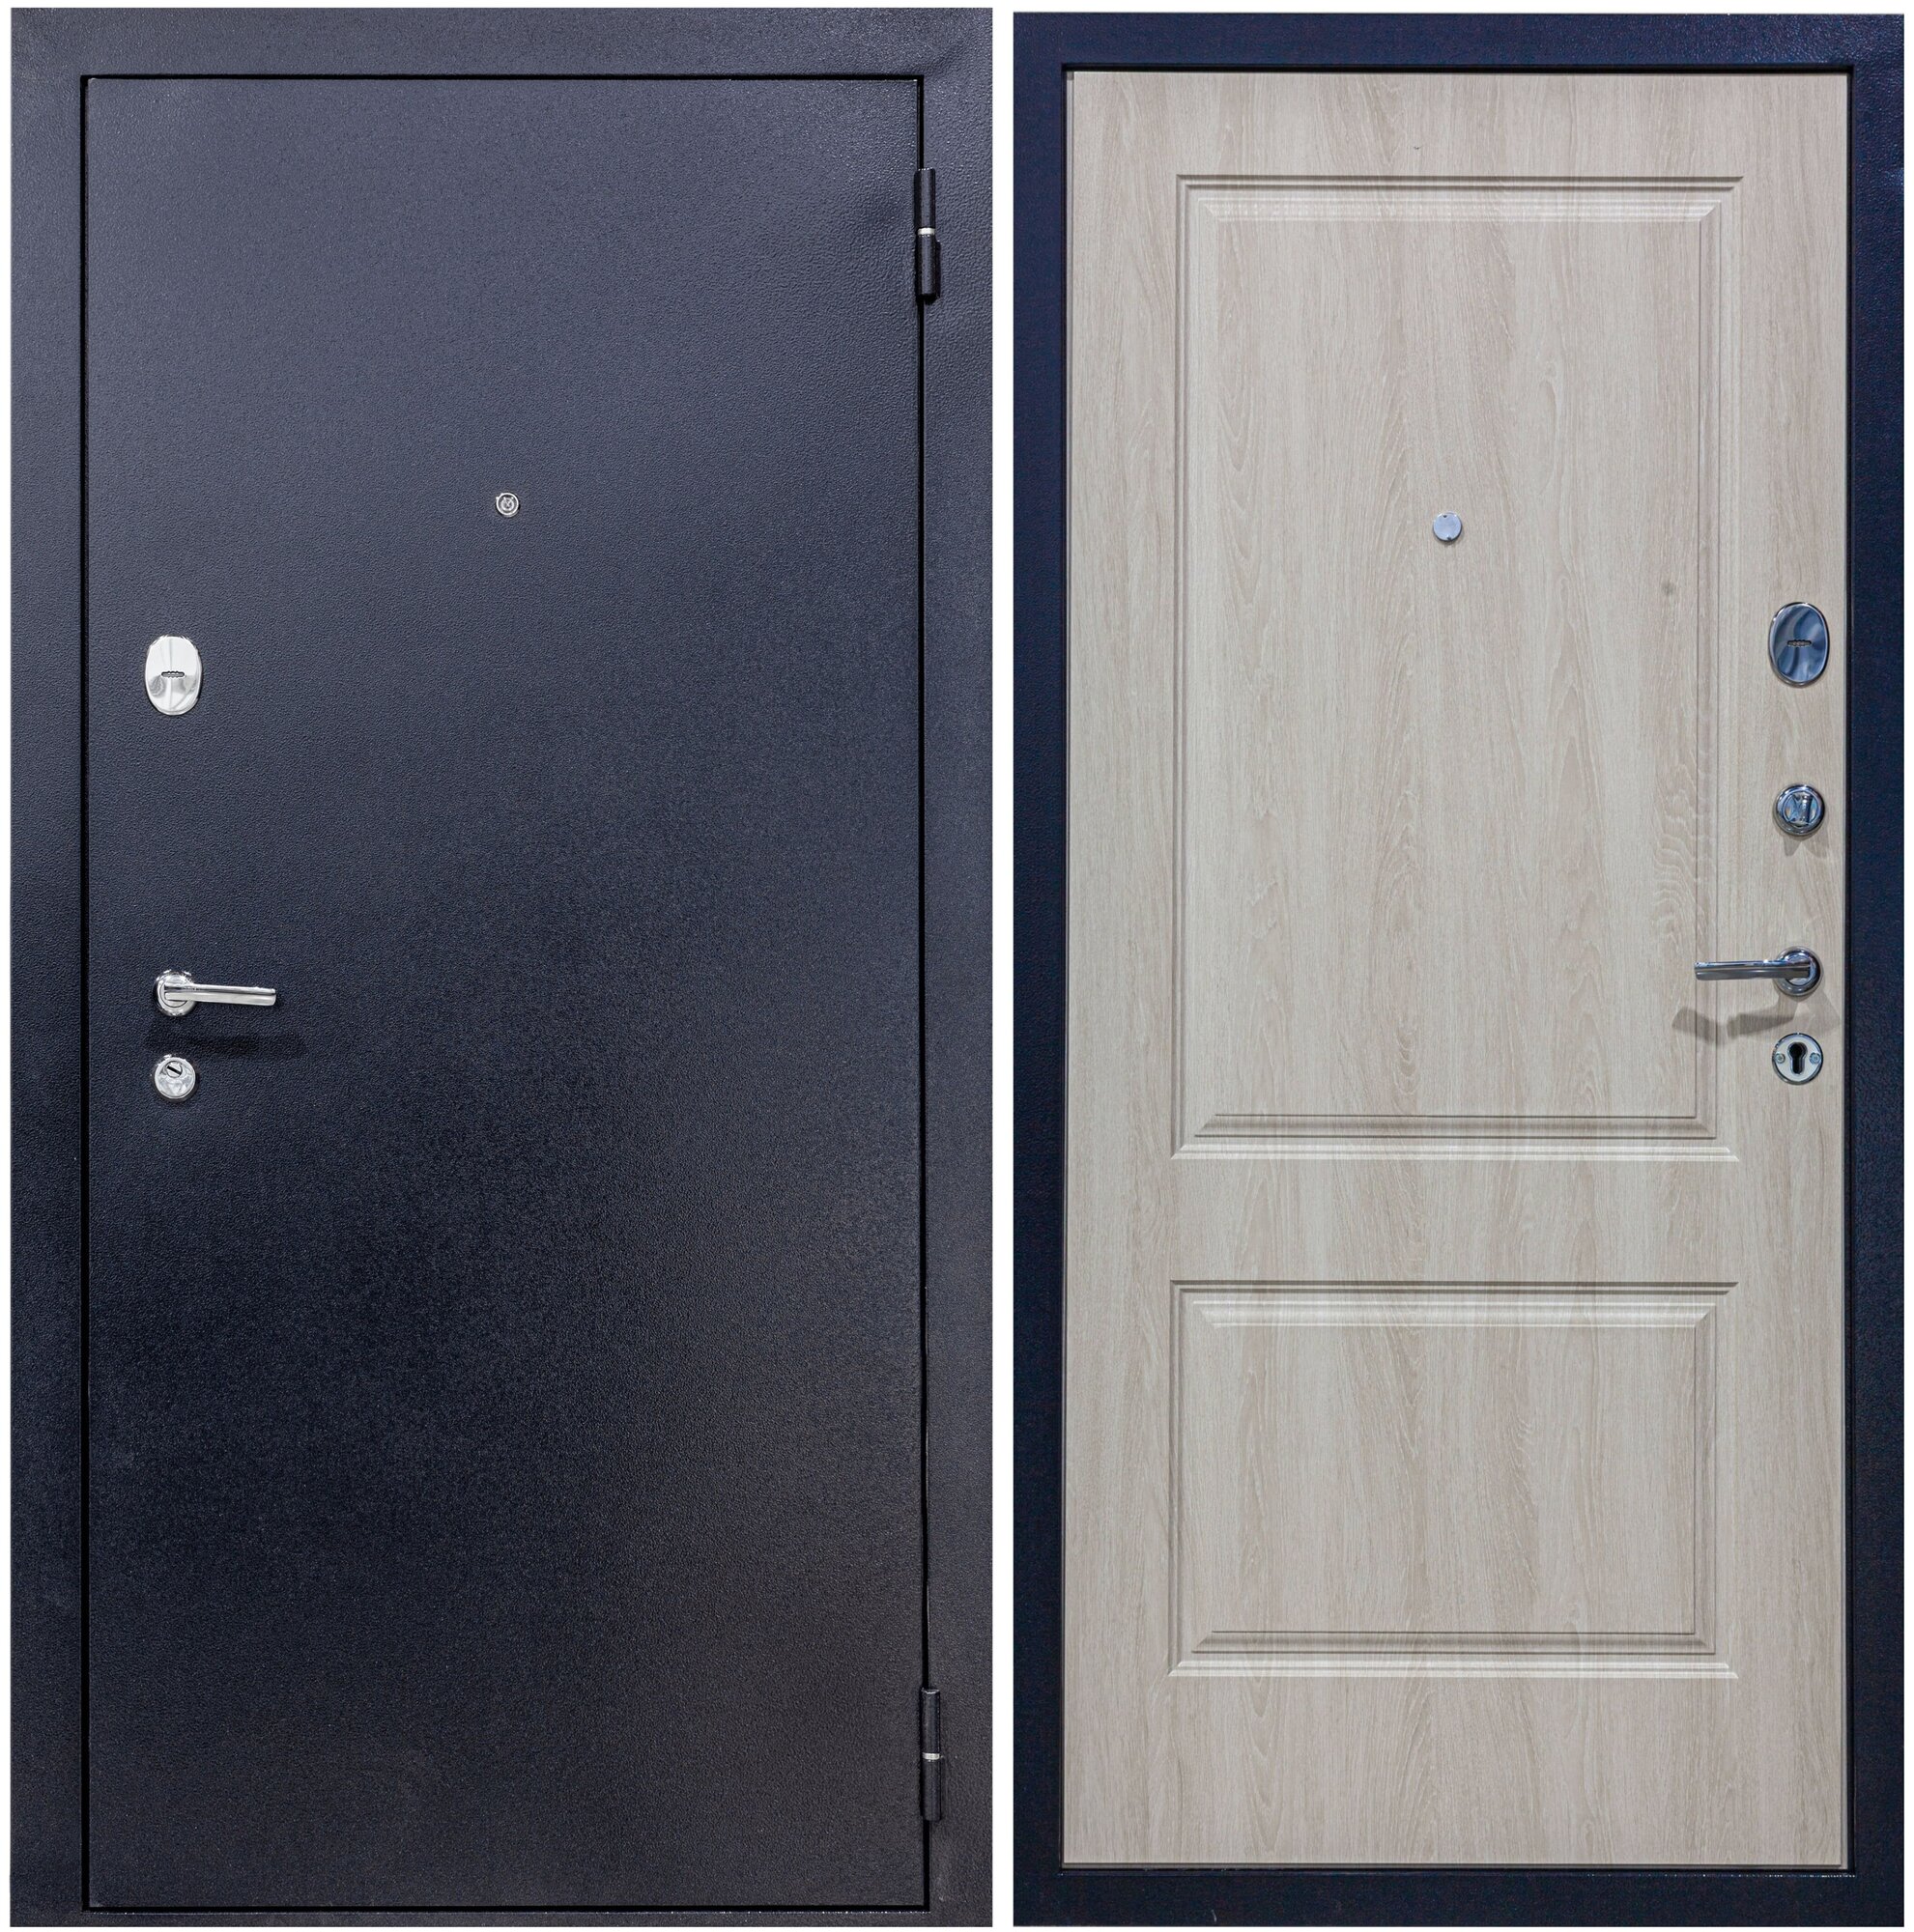 Дверь входная металлическая DIVA 510 2050х860 Правая Титан-Дуб фил крем, тепло-шумоизоляция, антикоррозийная защита для квартиры и дома